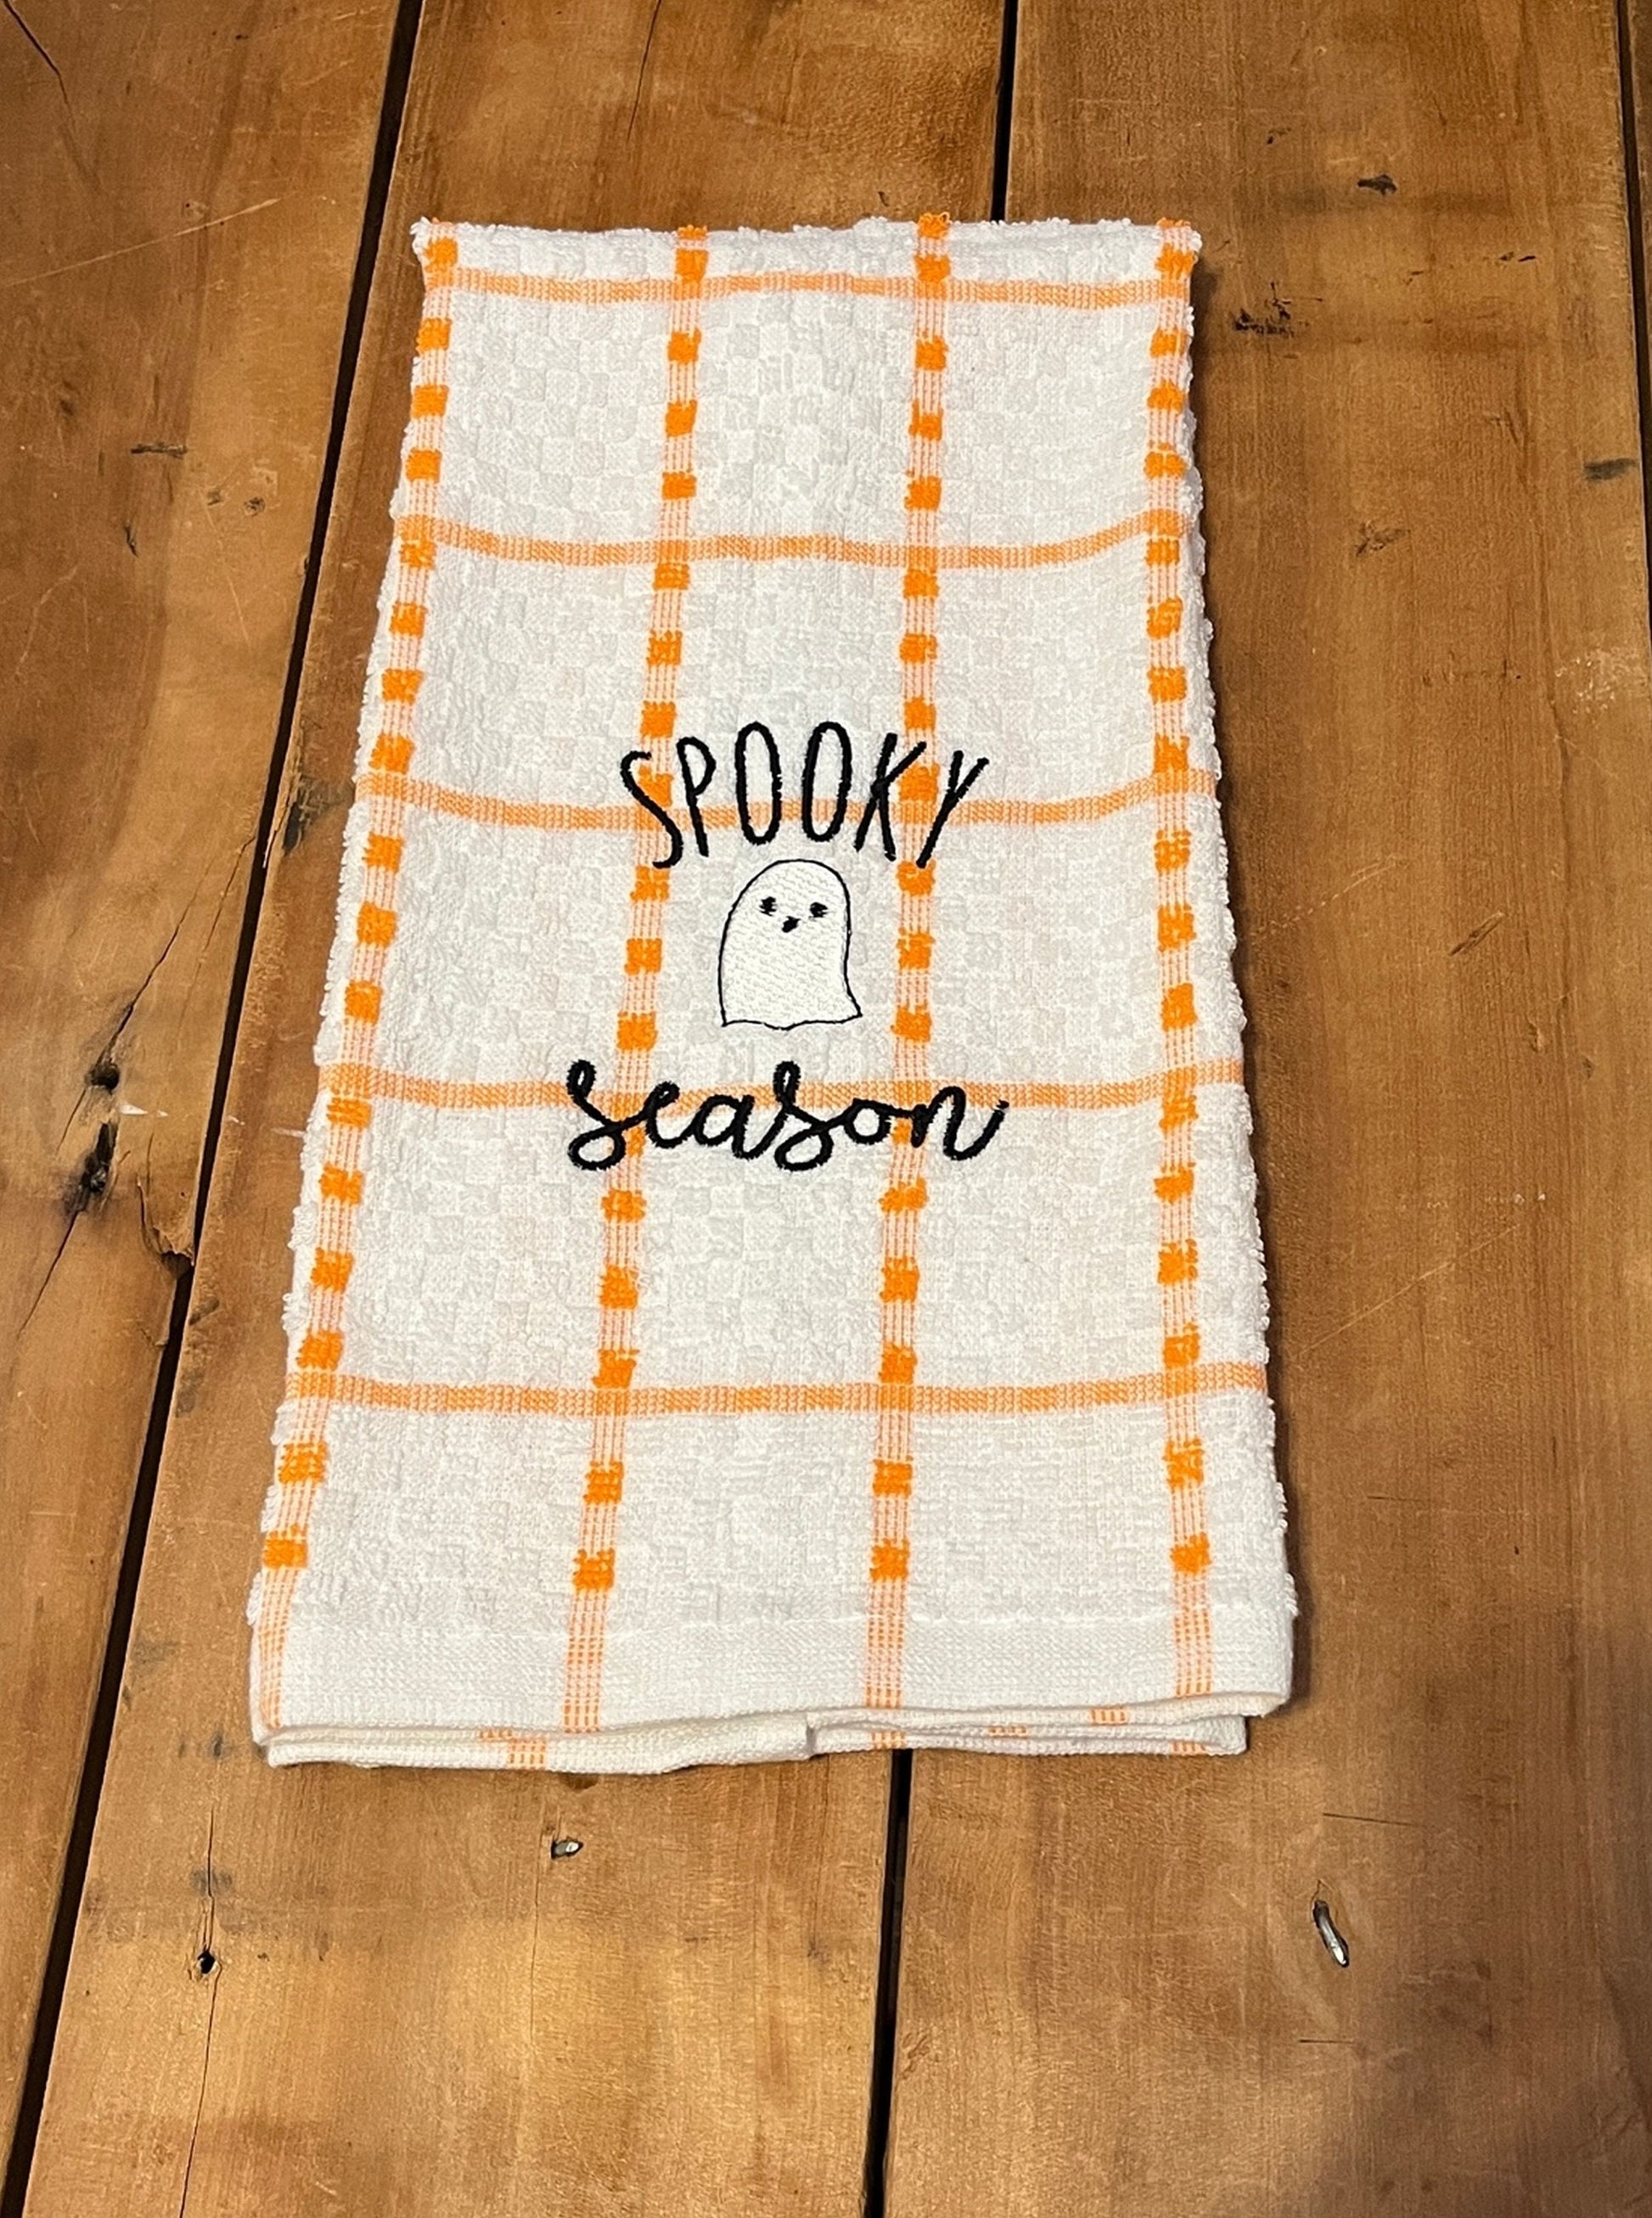 orange & white stripe towel spooky season embroidered on them